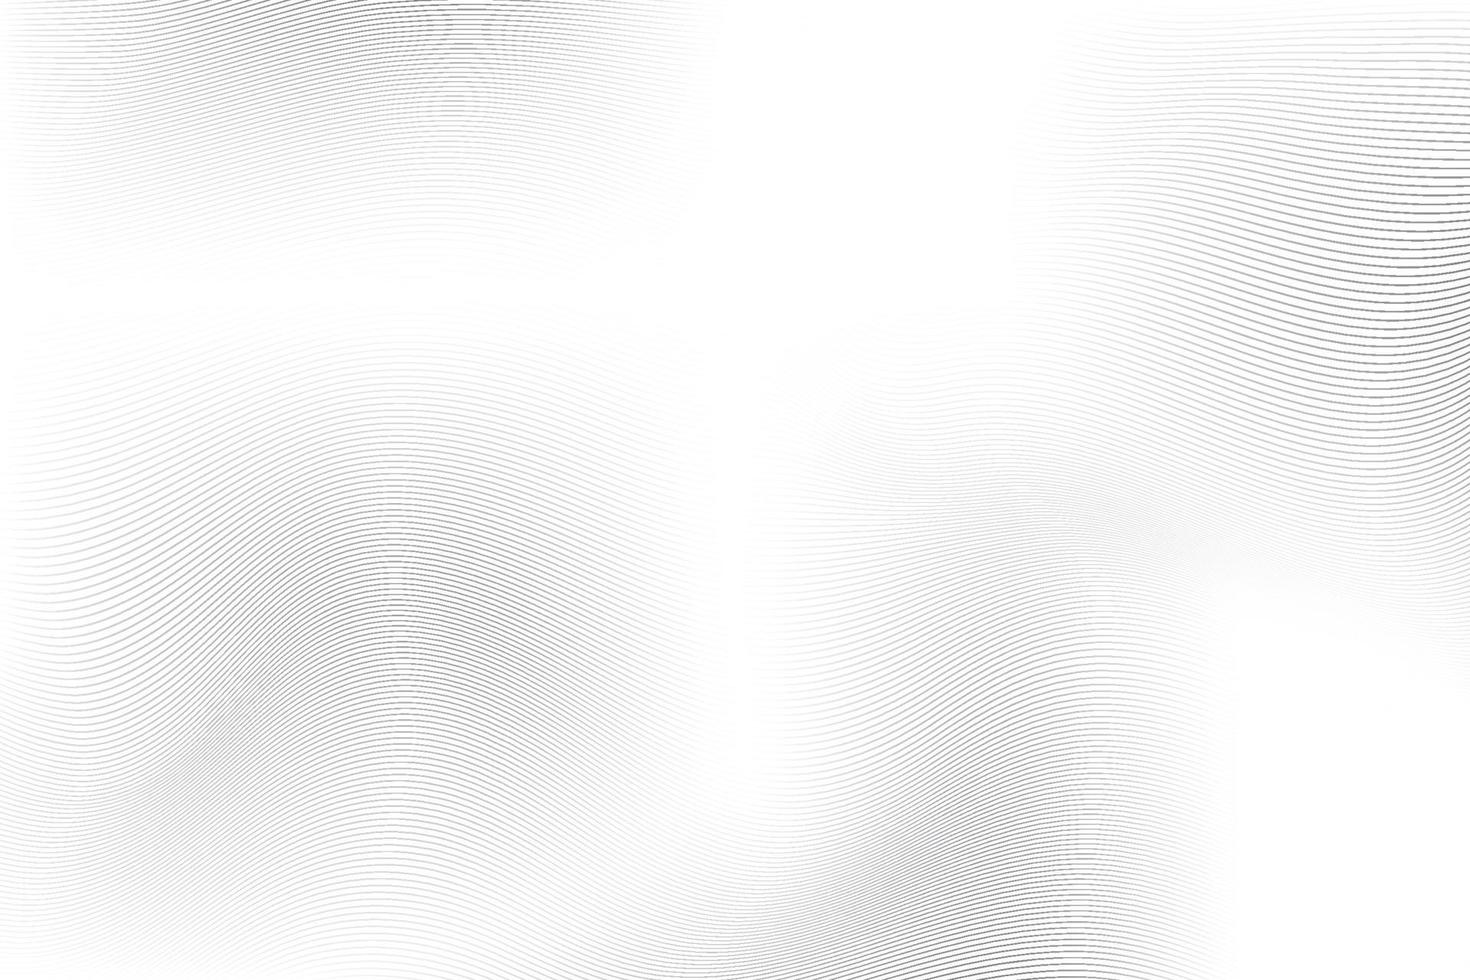 couleur blanche et grise abstraite, fond de rayures de conception moderne avec forme ronde géométrique, motif de vague. illustration vectorielle. vecteur